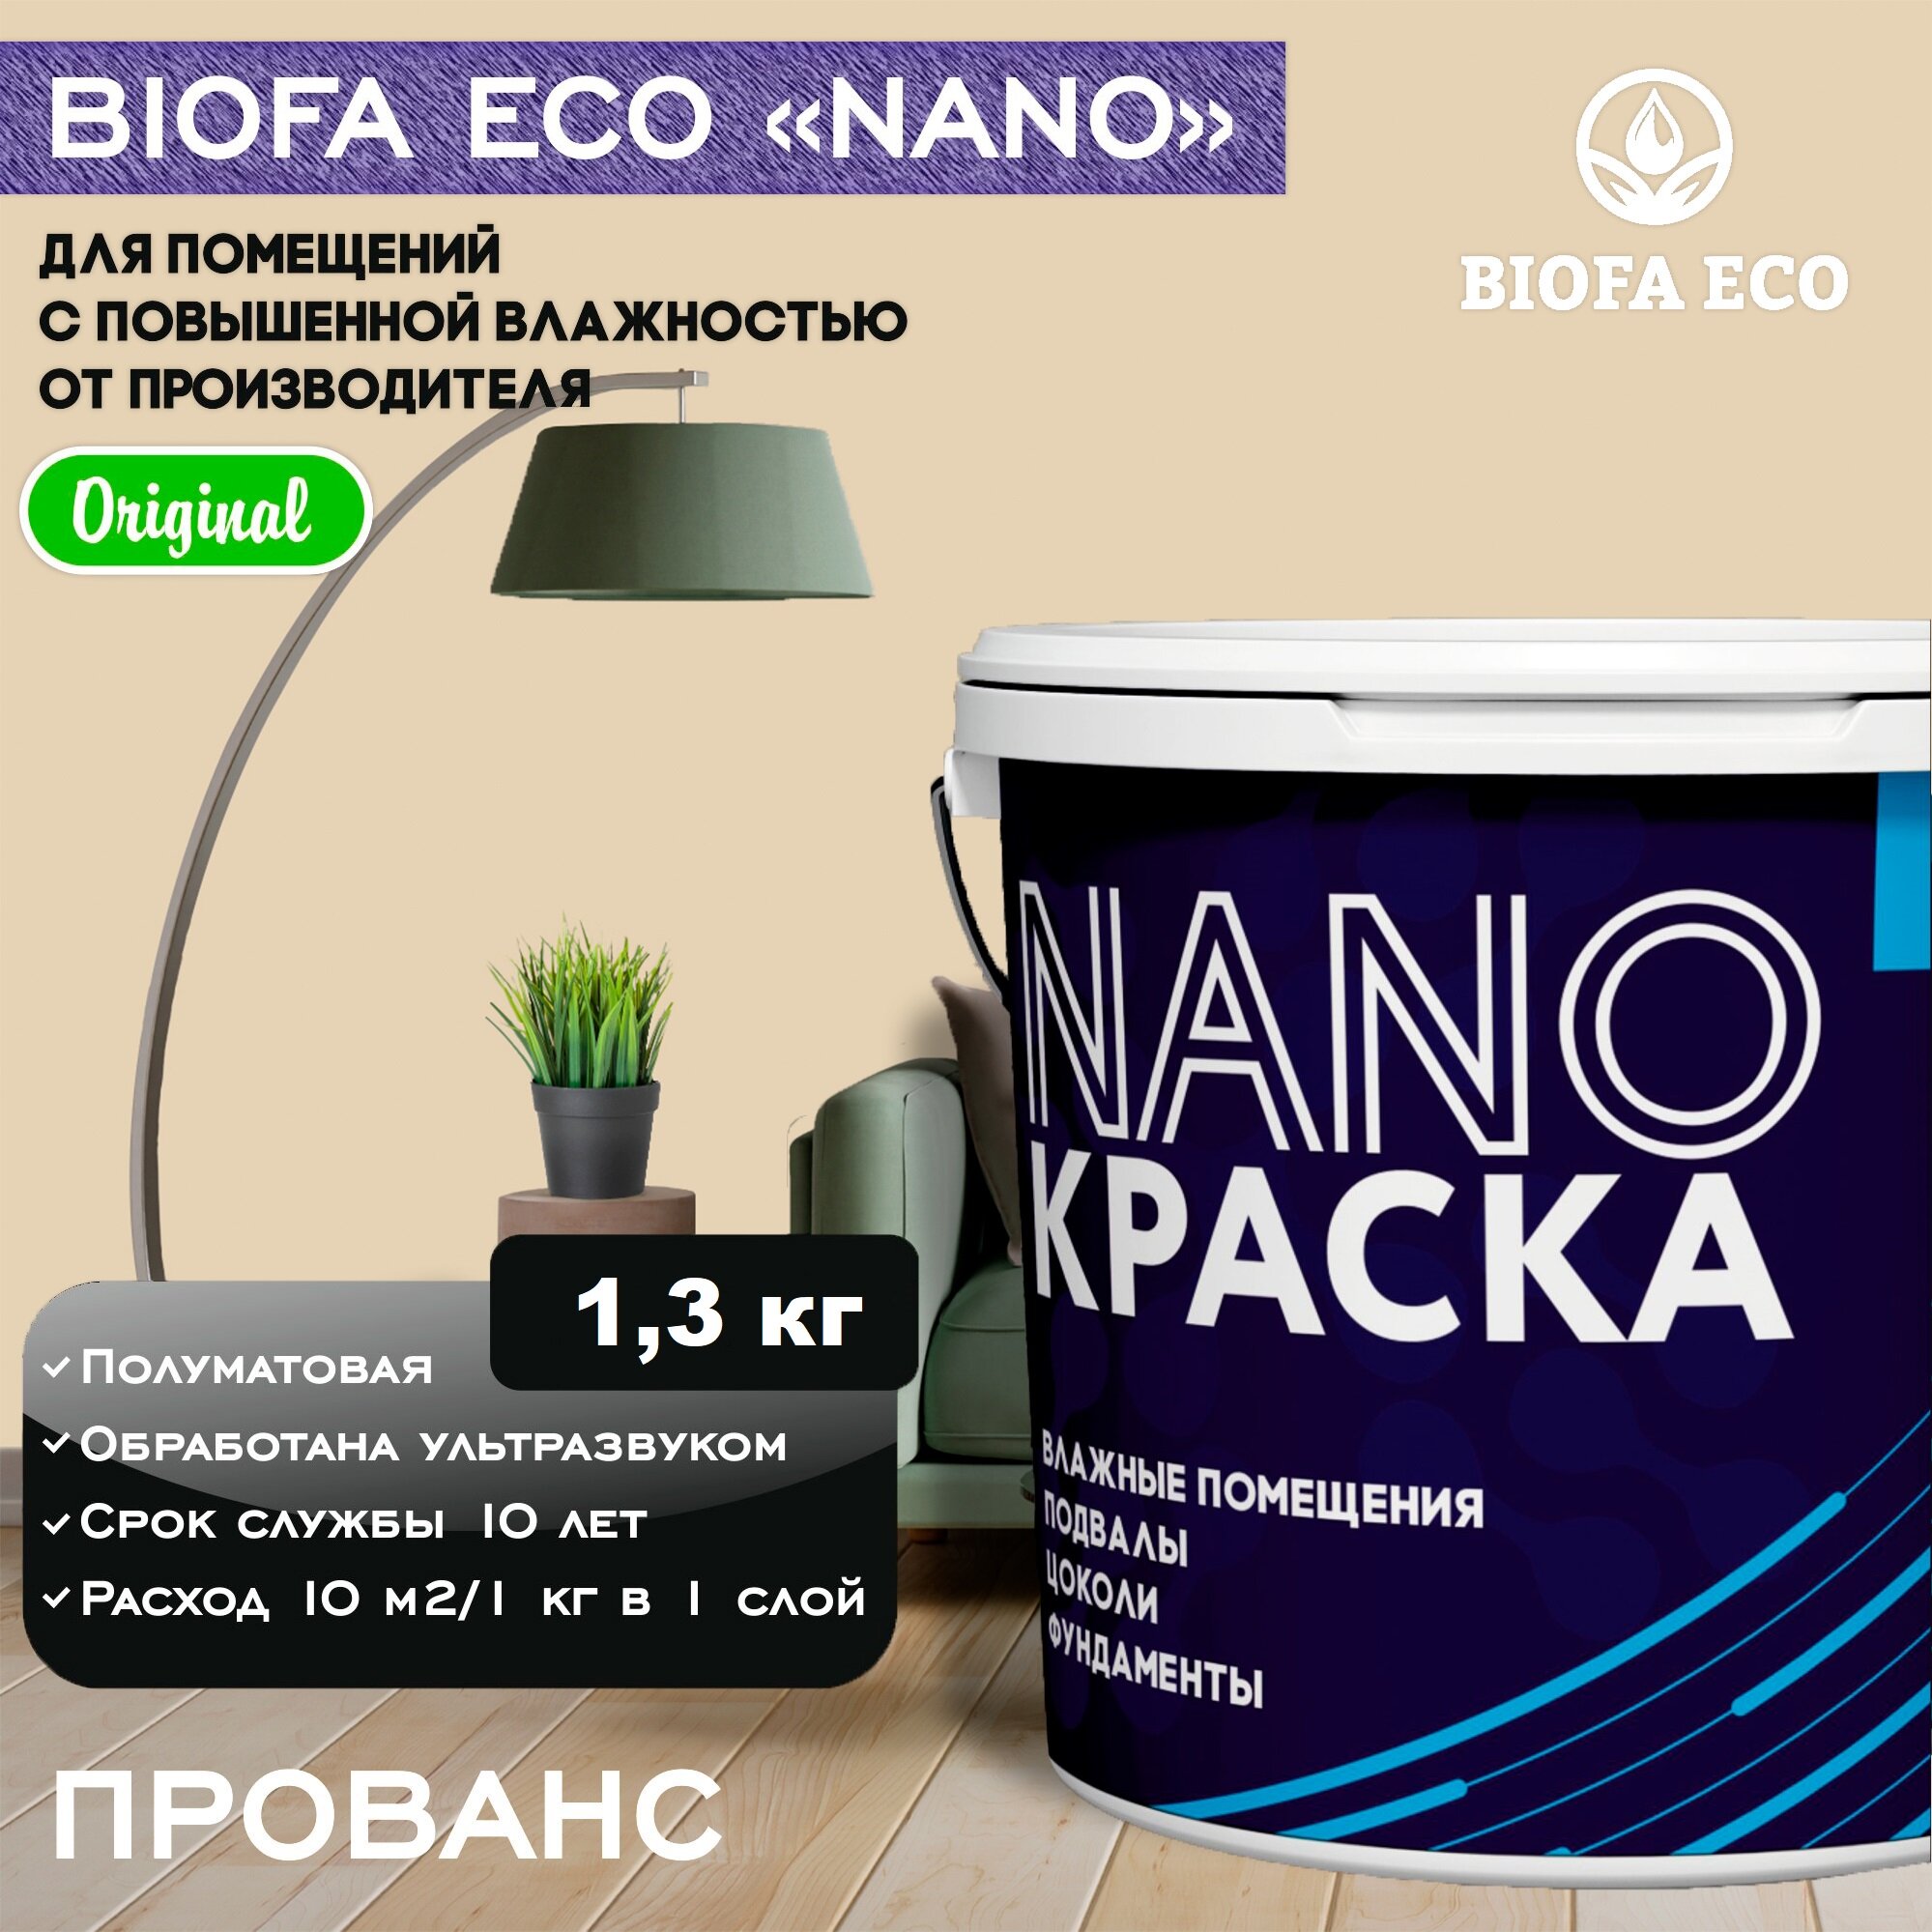 Краска BIOFA ECO NANO для помещений с повышенной влажностью (подвалов, цоколей, фундаментов) противогрибковая, цвет прованс, 1,3 кг